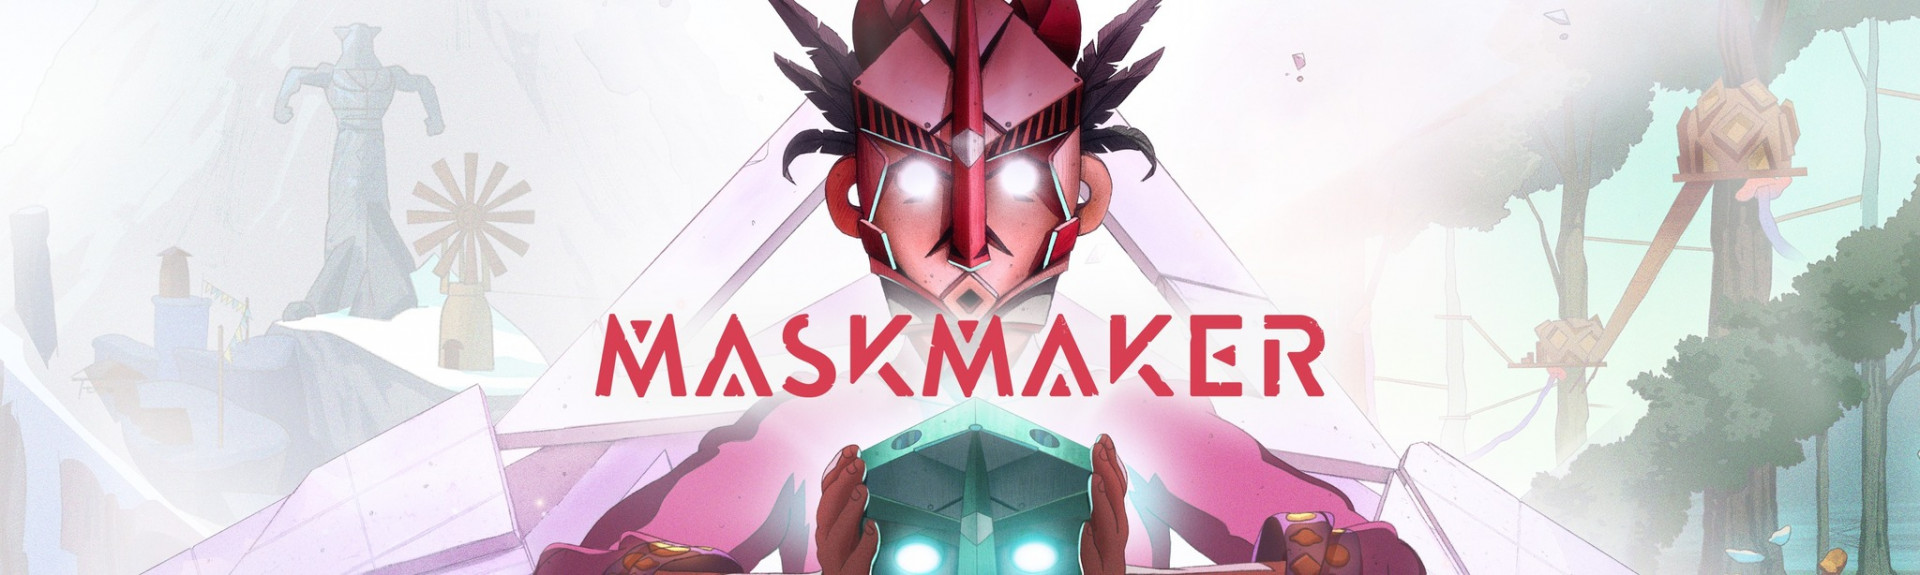 Maskmaker en español, con movimiento libre y por menos de 5€ en Steam